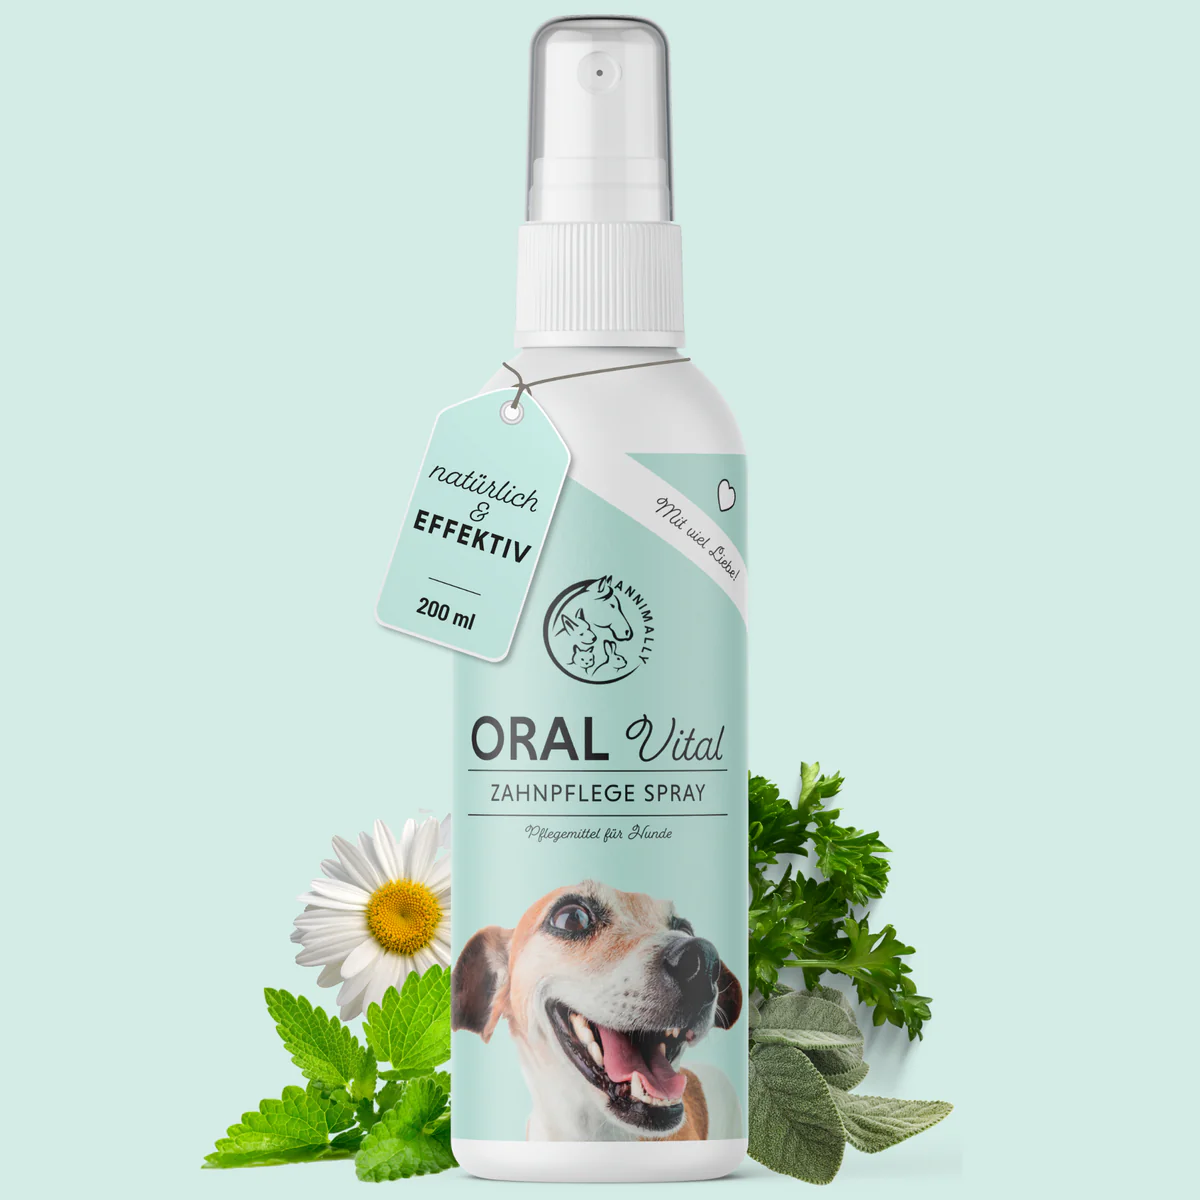 Oral Vital Dentalspray für Hunde von Annimally